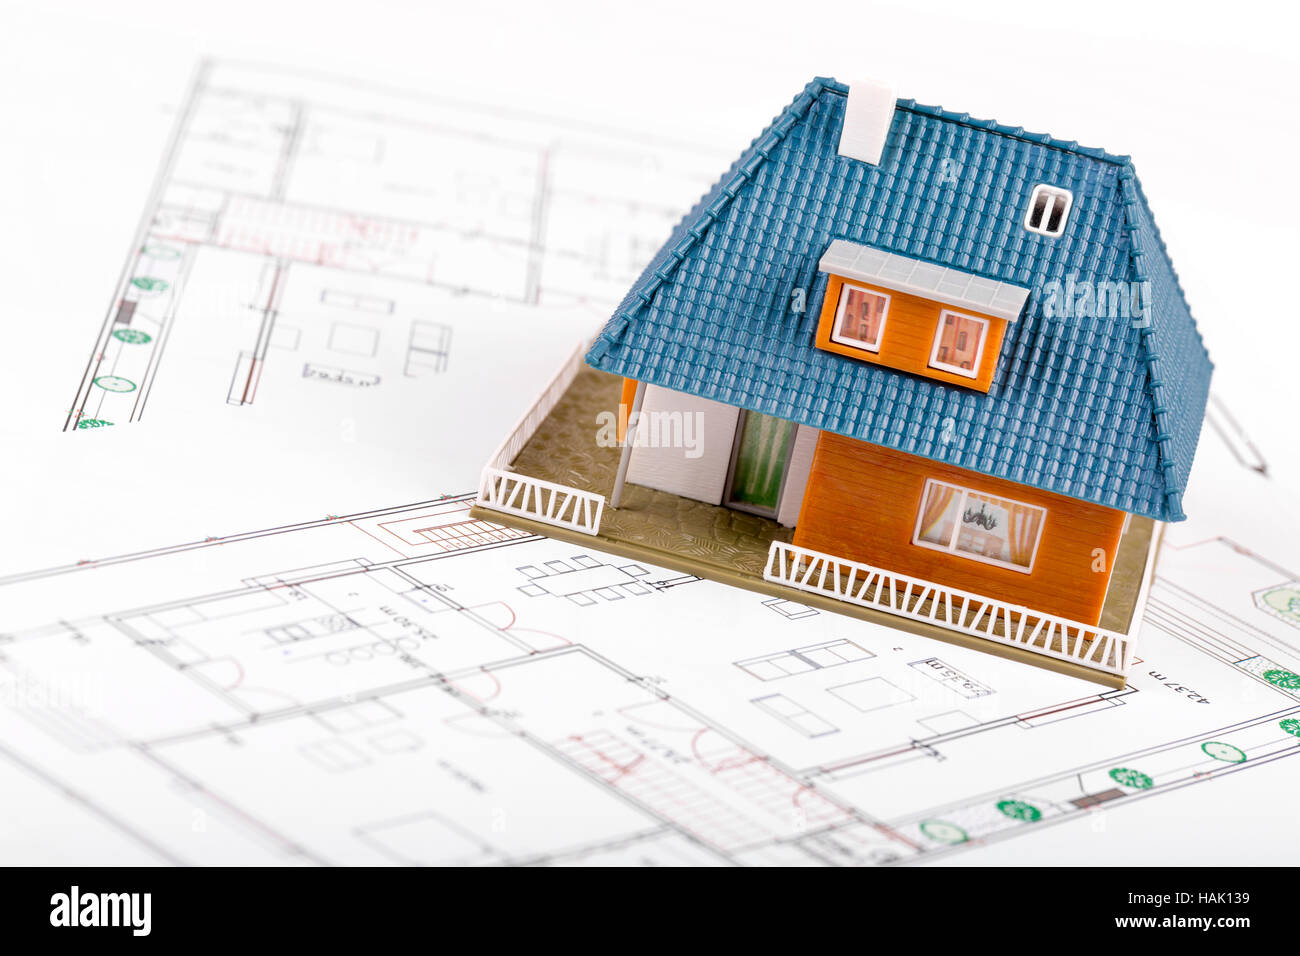 Sviluppo immobiliare - casa modello in scala il blueprint Foto Stock